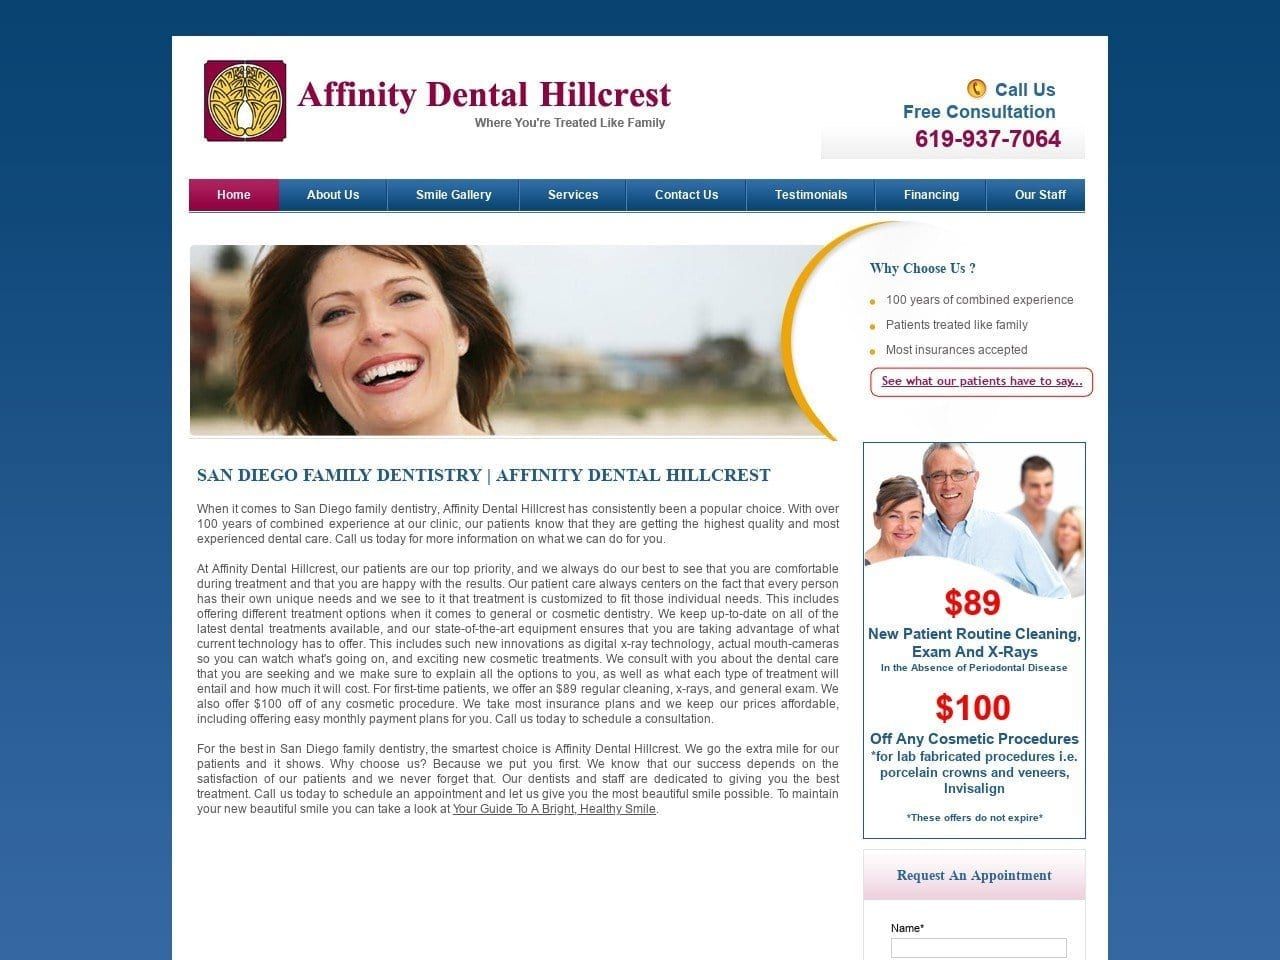 Affinity Dental Hillcrest Website Screenshot from affinitydentalhillcrest.com